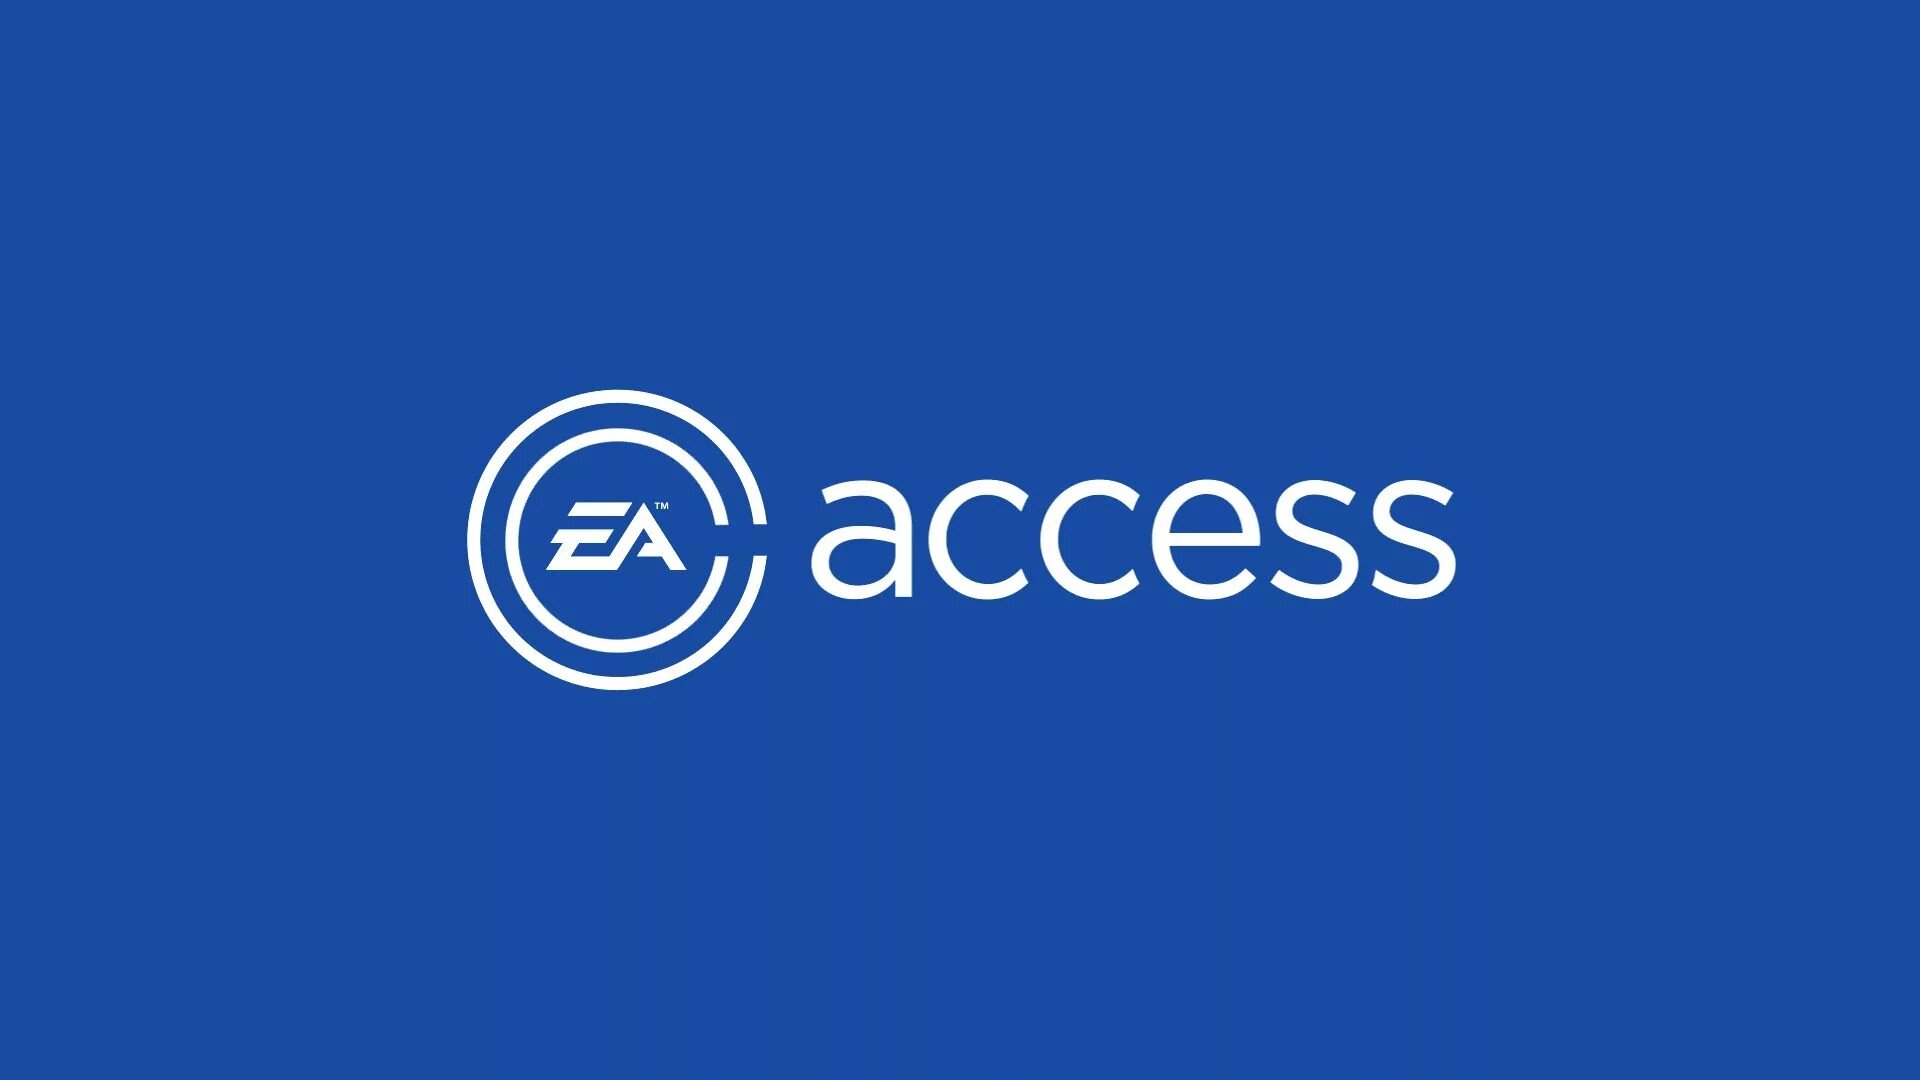 Ea access. EA подписка. Еа аксесс игры. PS access.